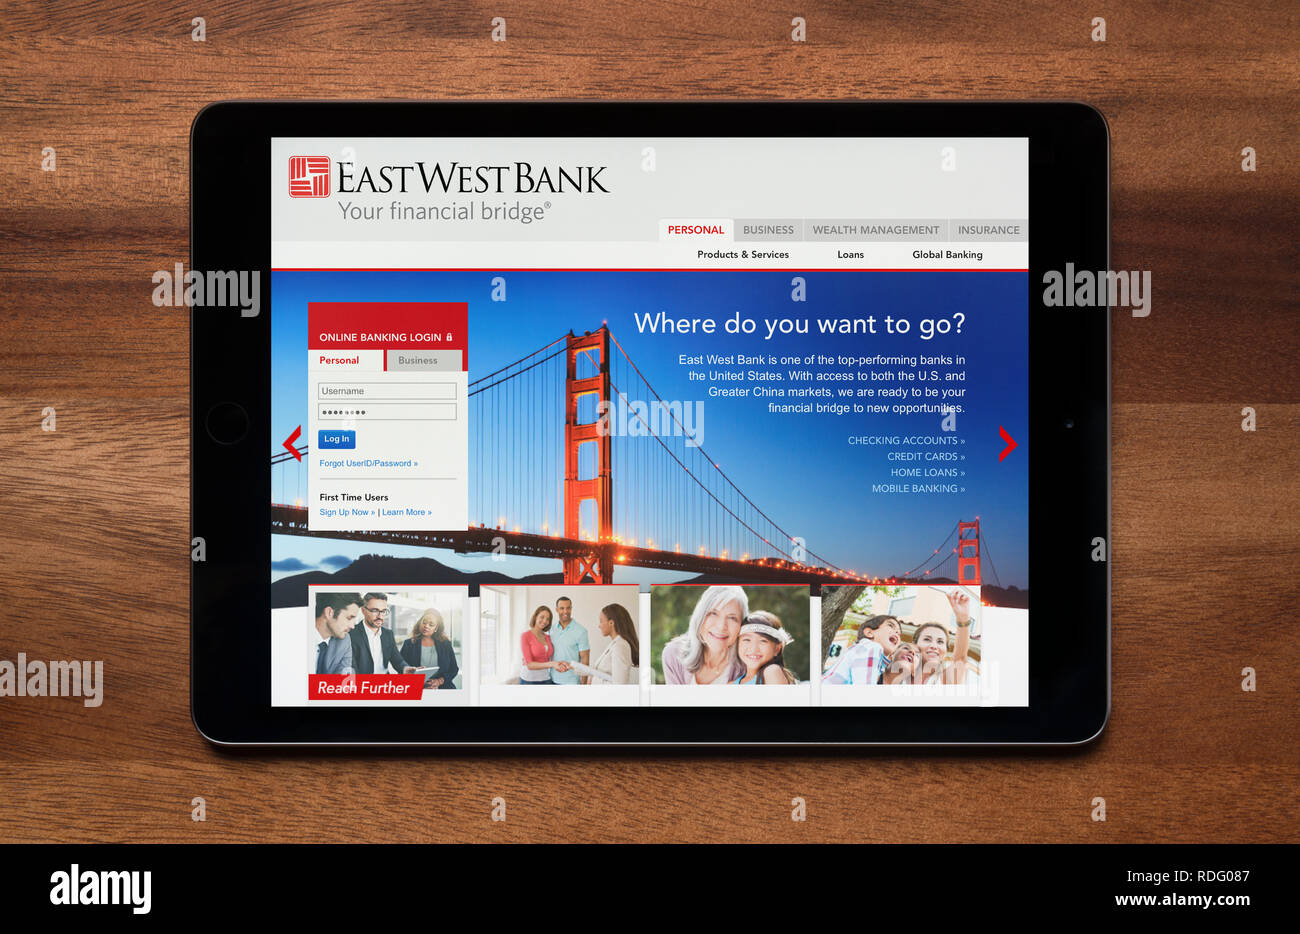 El sitio web de East West Bank es visto en un iPad, que descansa sobre una mesa de madera (uso Editorial solamente). Foto de stock